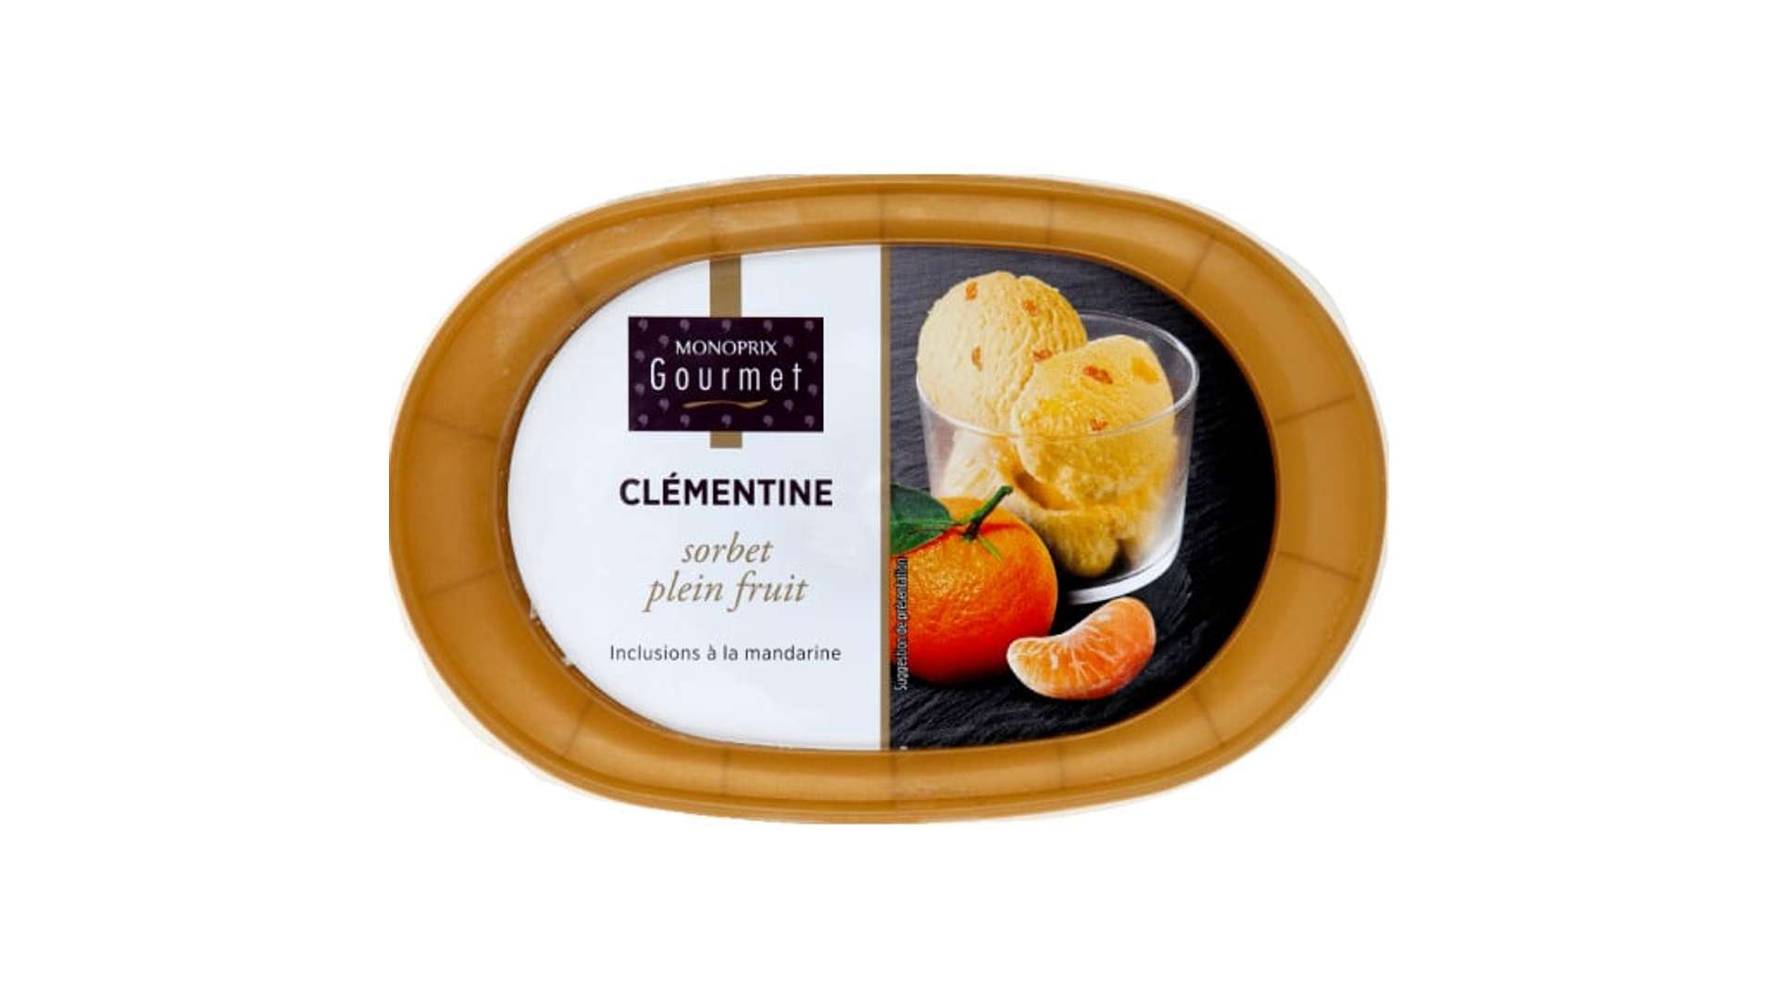 Monoprix Gourmet - Sorbet plein fruit inclusions à la mandarine (clémentine)